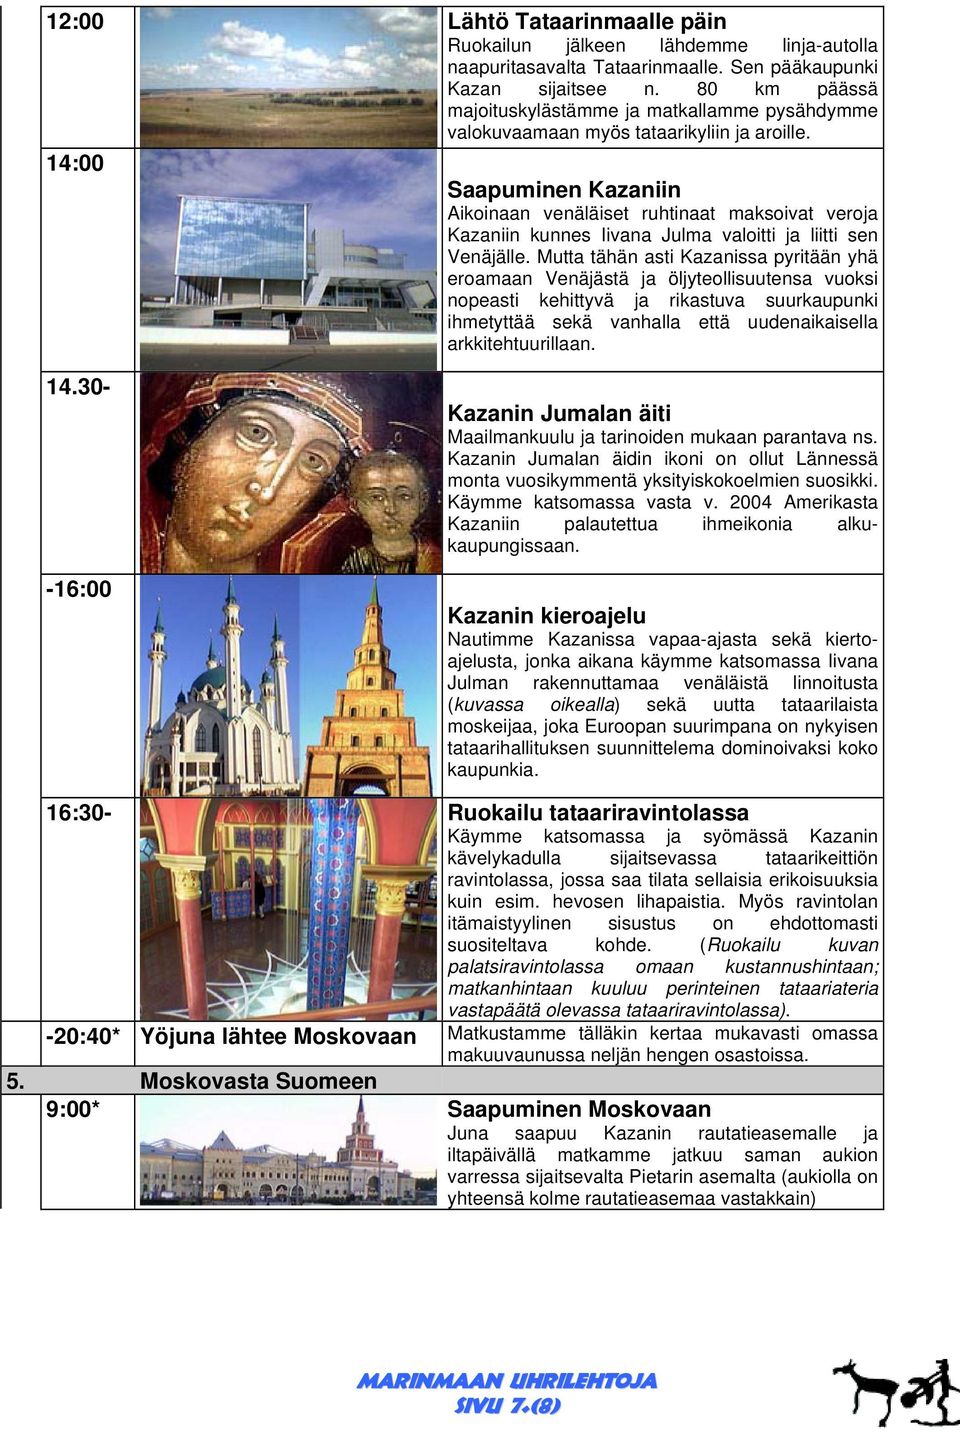 14:00 Saapuminen Kazaniin Aikoinaan venäläiset ruhtinaat maksoivat veroja Kazaniin kunnes Iivana Julma valoitti ja liitti sen Venäjälle.